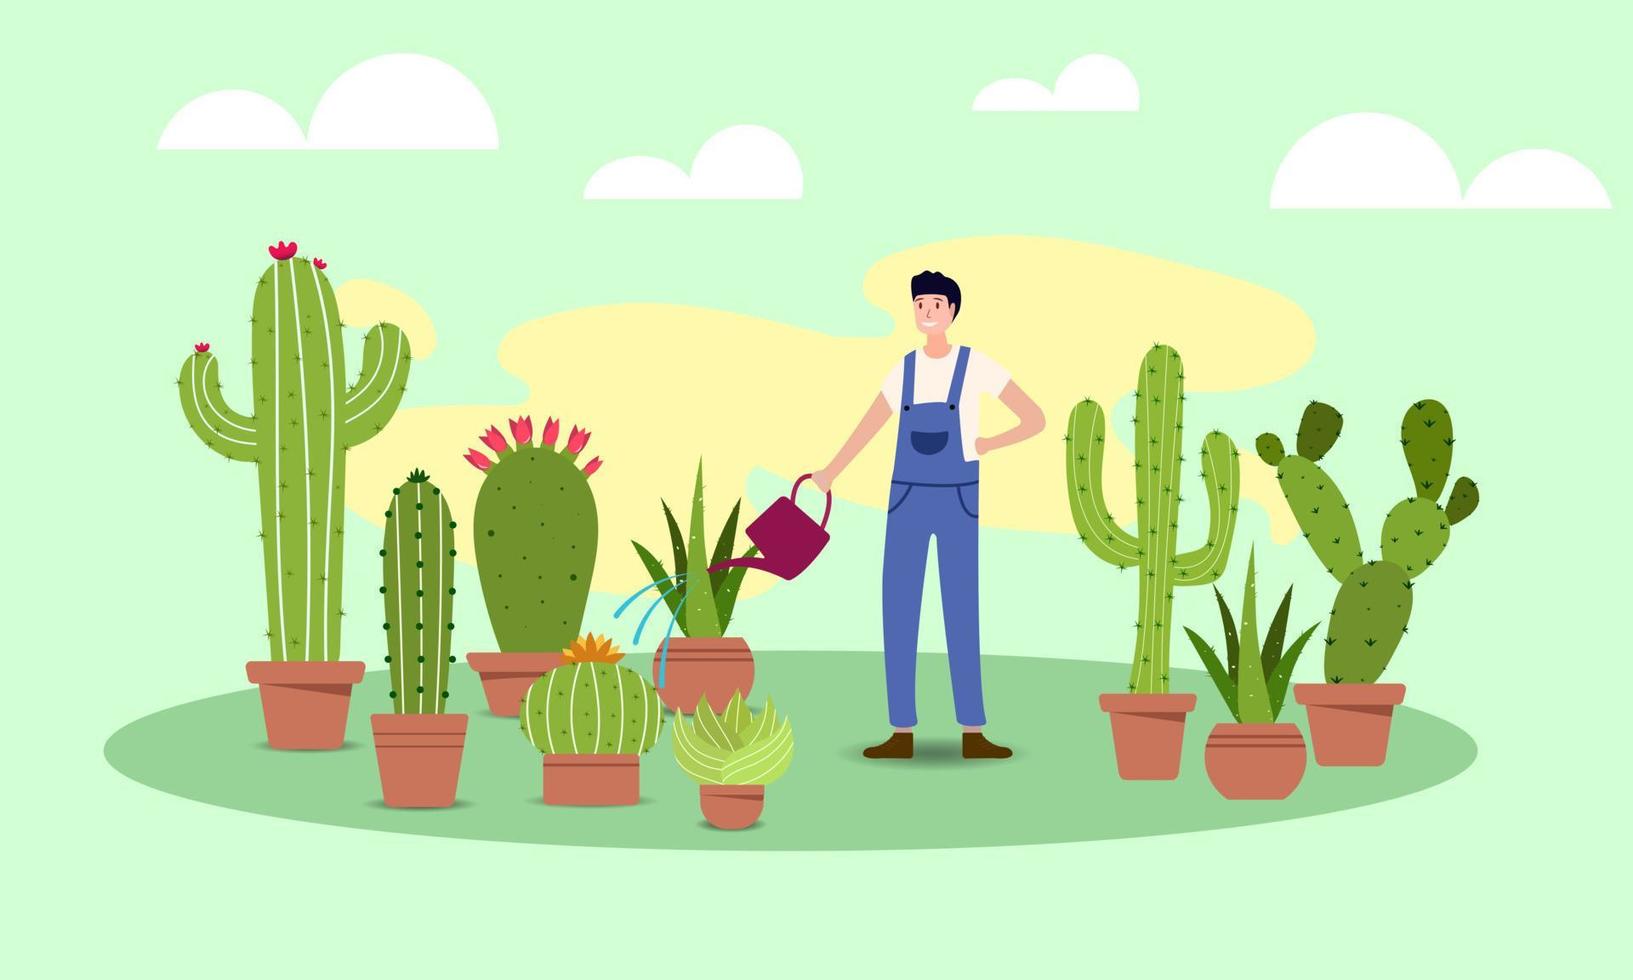 jordbrukare använda sig av vattning burkar till vatten olika typer av grön kaktus i krukor. de kaktus har taggar den där omge sig som en mindre hydrofob område. jordbrukare kan nu odla och sälja. vektor